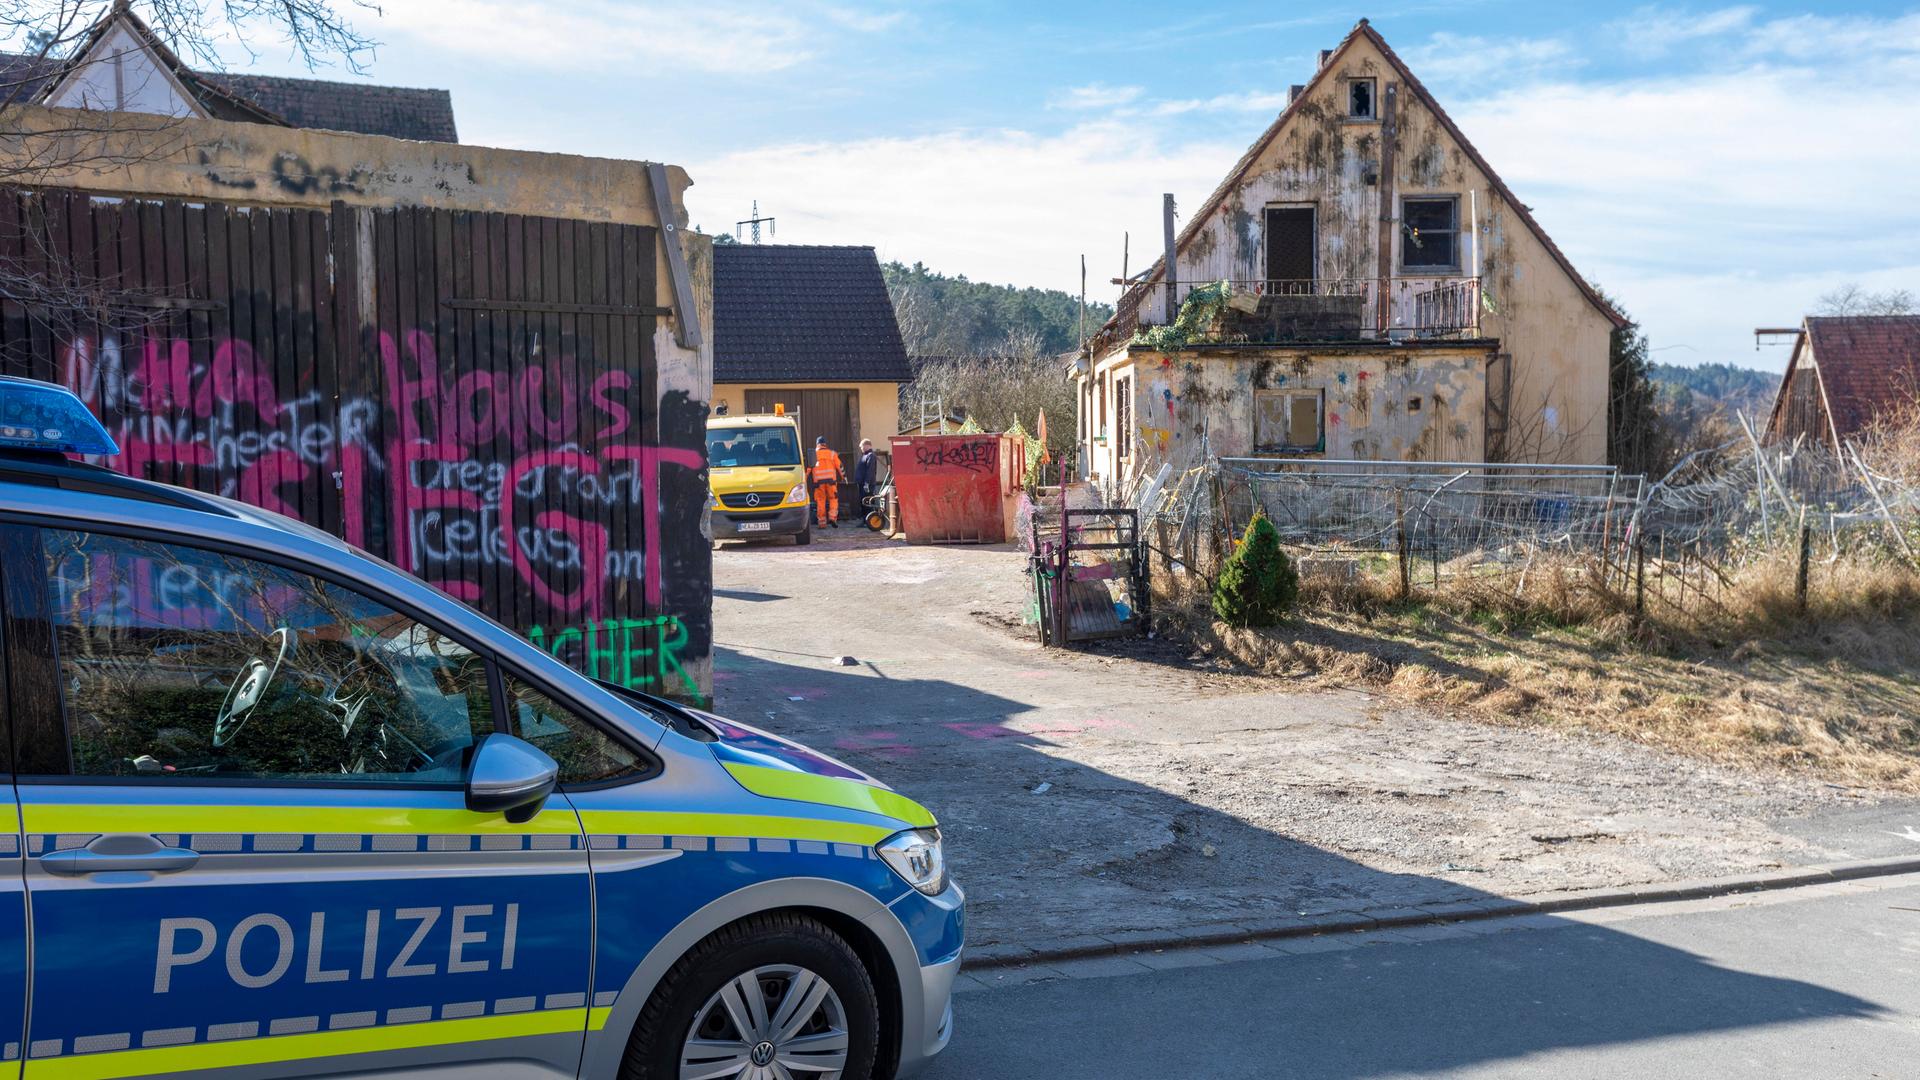 Das Haus des Drachenlords wurde von der Gemeinde Emskirchen gekauft. Es wird gerade ausgeräumt und soll abgerissen werden. Die Räumarbeiten auf dem Grundstück werden sicherheitshalber unter Schutz der Polizei durchgeführt. 